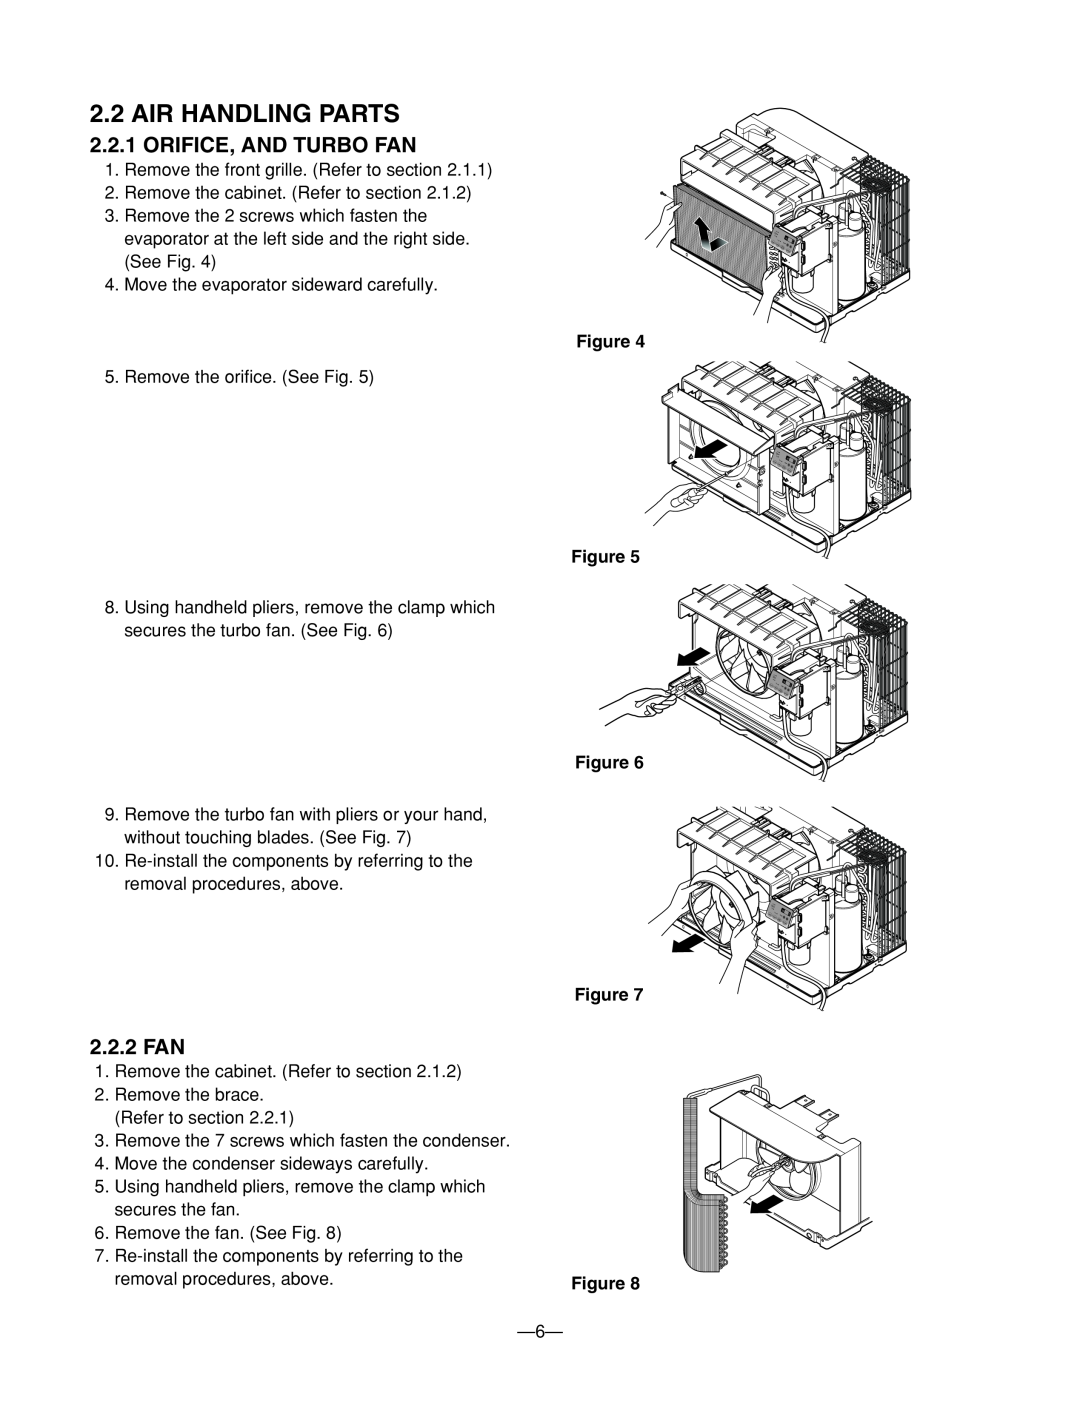 Heat Controller BG-81A, BG-123A, BG-101A service manual Air Handling Parts, Orifice, And Turbo Fan, 2.2.2 FAN 